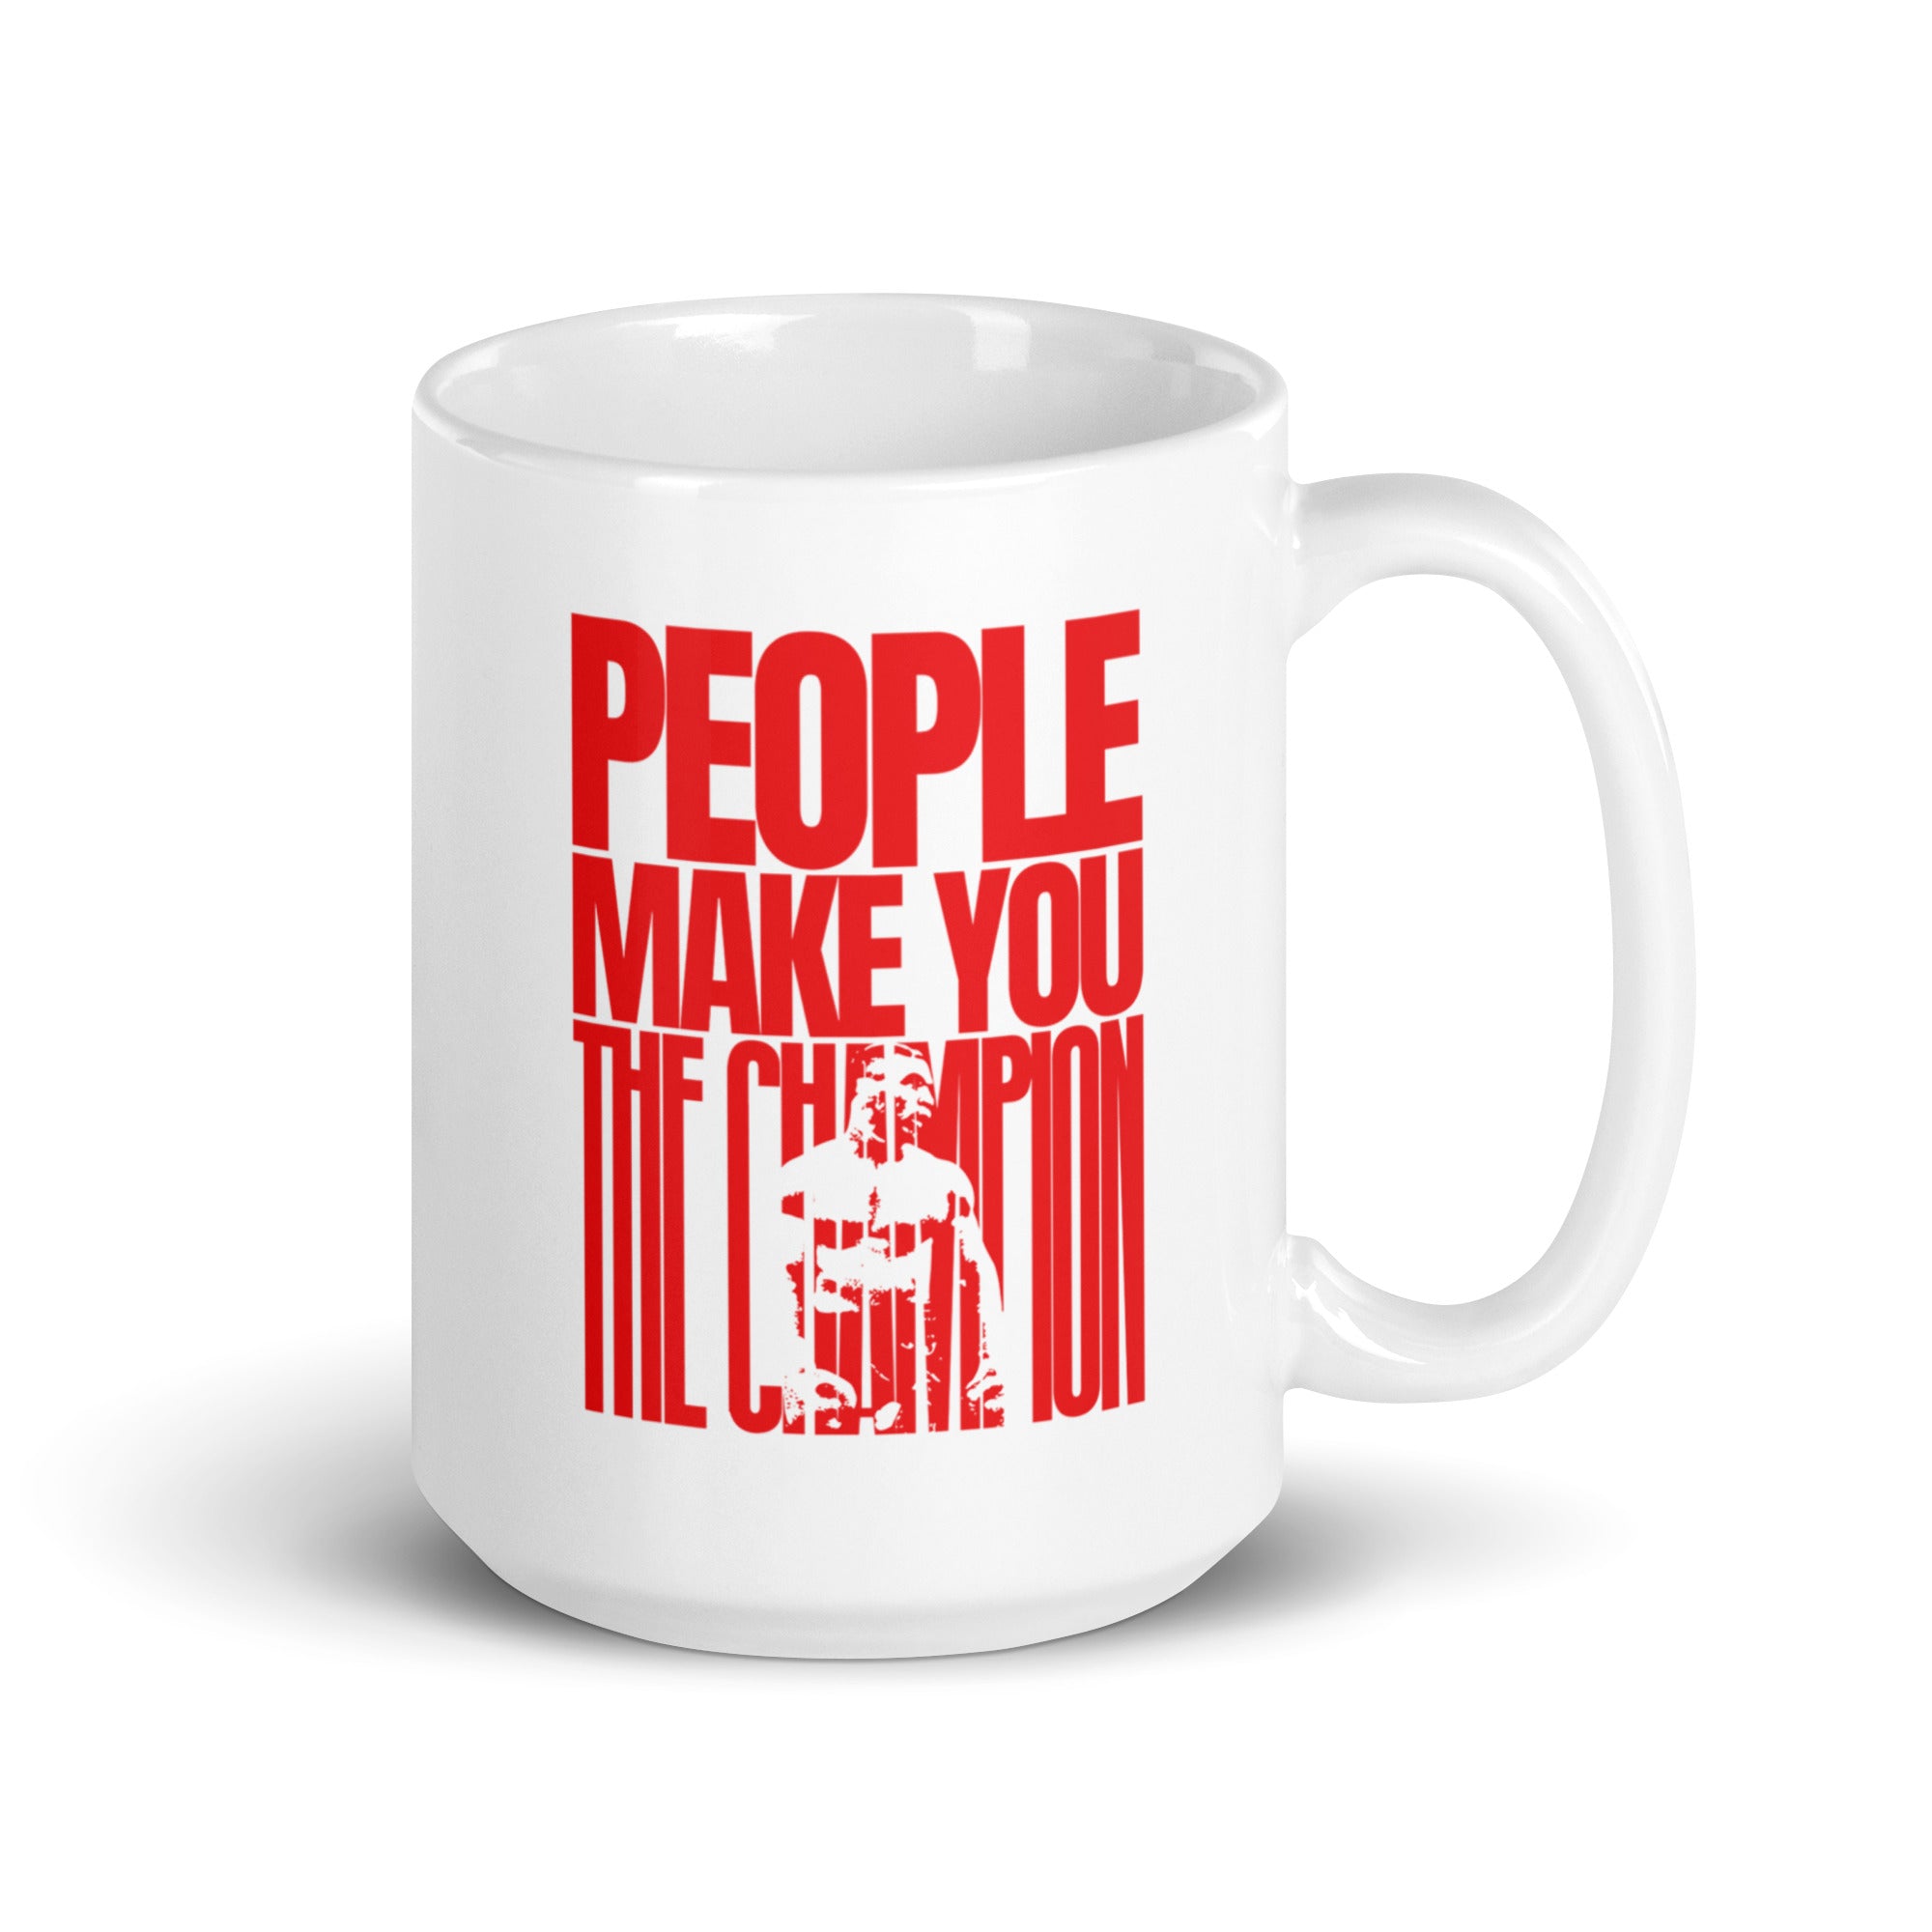 People Make You the Champion mug - MT Collection